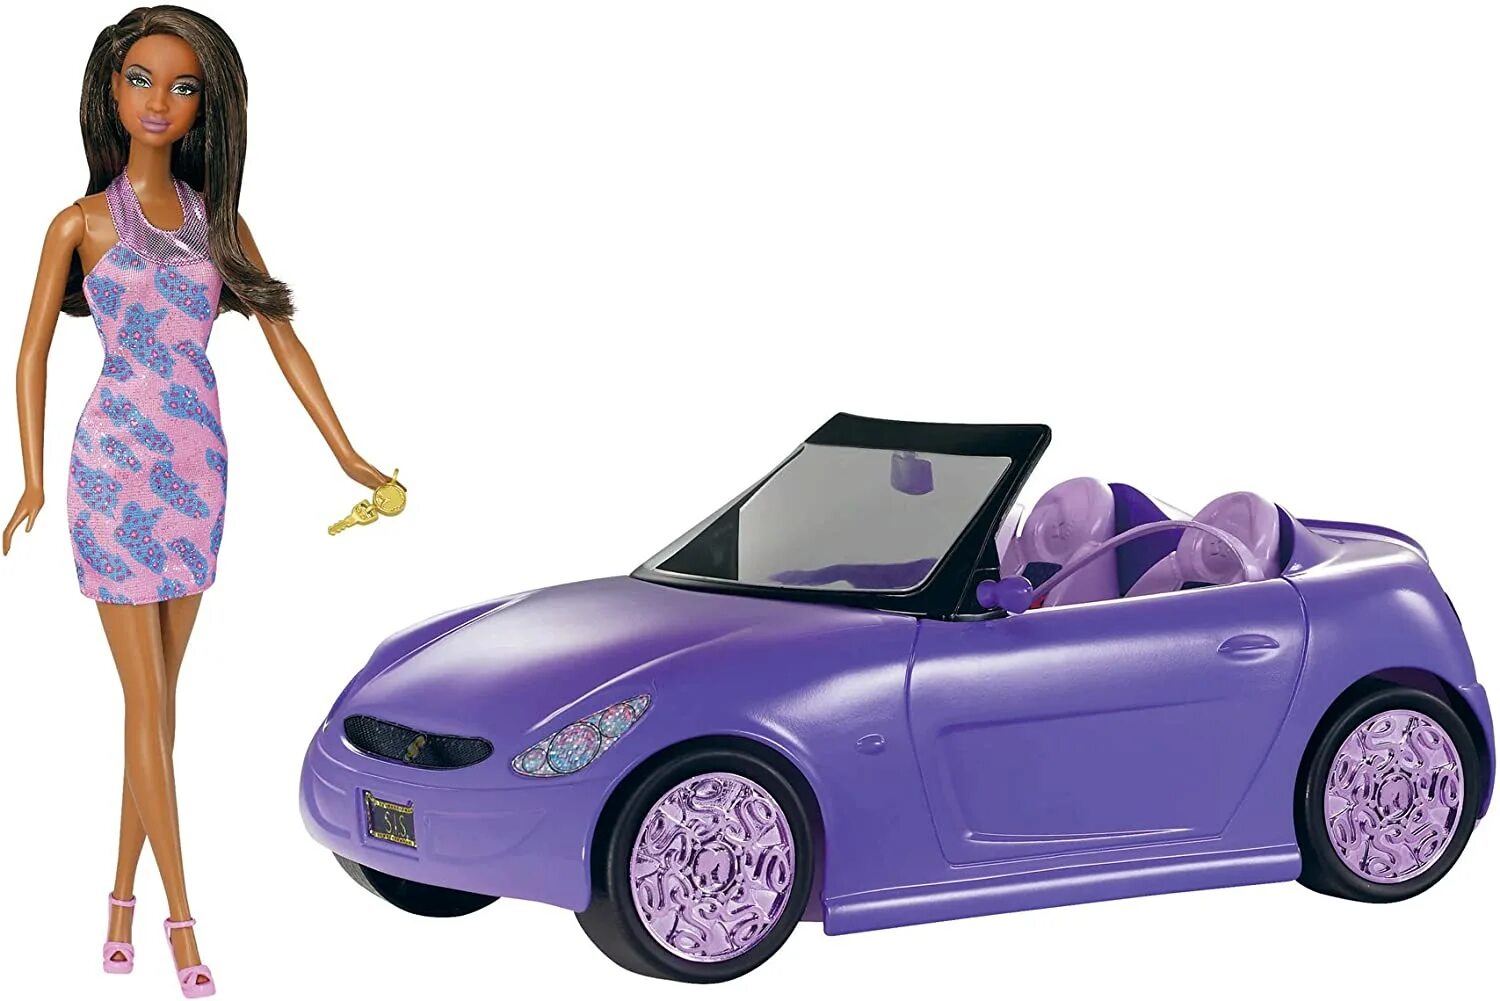 Купить куклы машину. Кукла Барби с машиной. Игрушечная машина для Барби. Розовая машинка куклы Барби. Машина недорогая Барби.